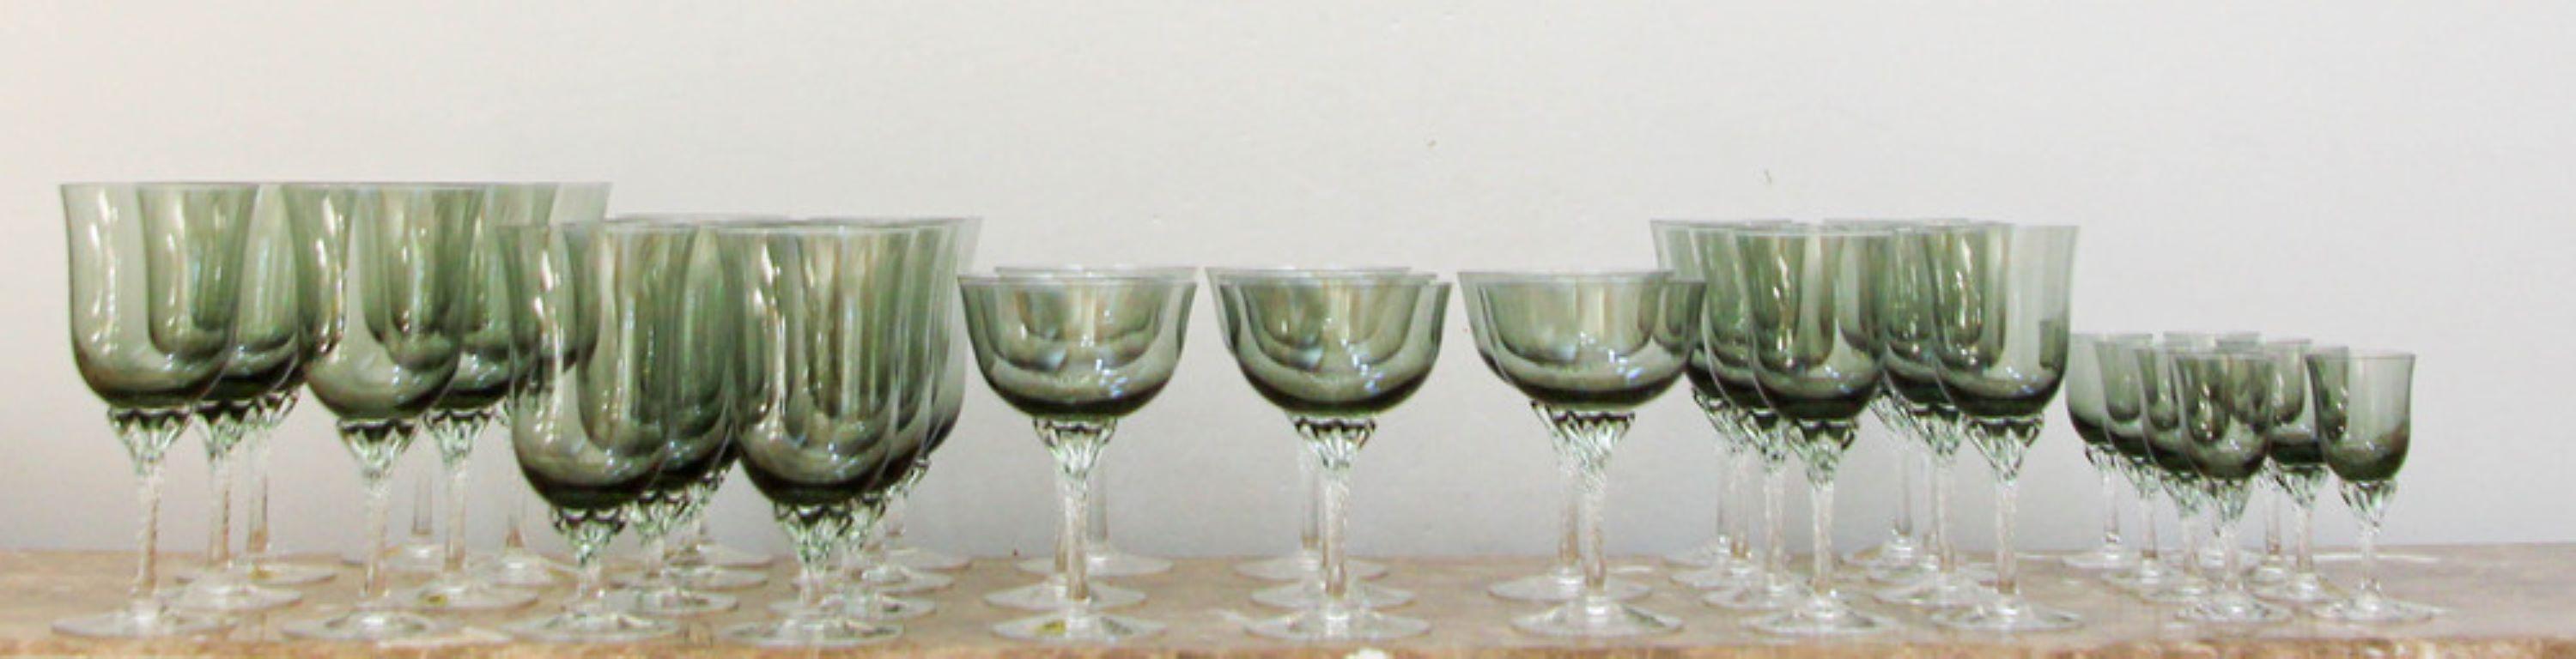 Sasaki grands verres à boire en cristal smoke bowl twist stem set de 40 pièces.
1990 Verres à pied en cristal soufflé 